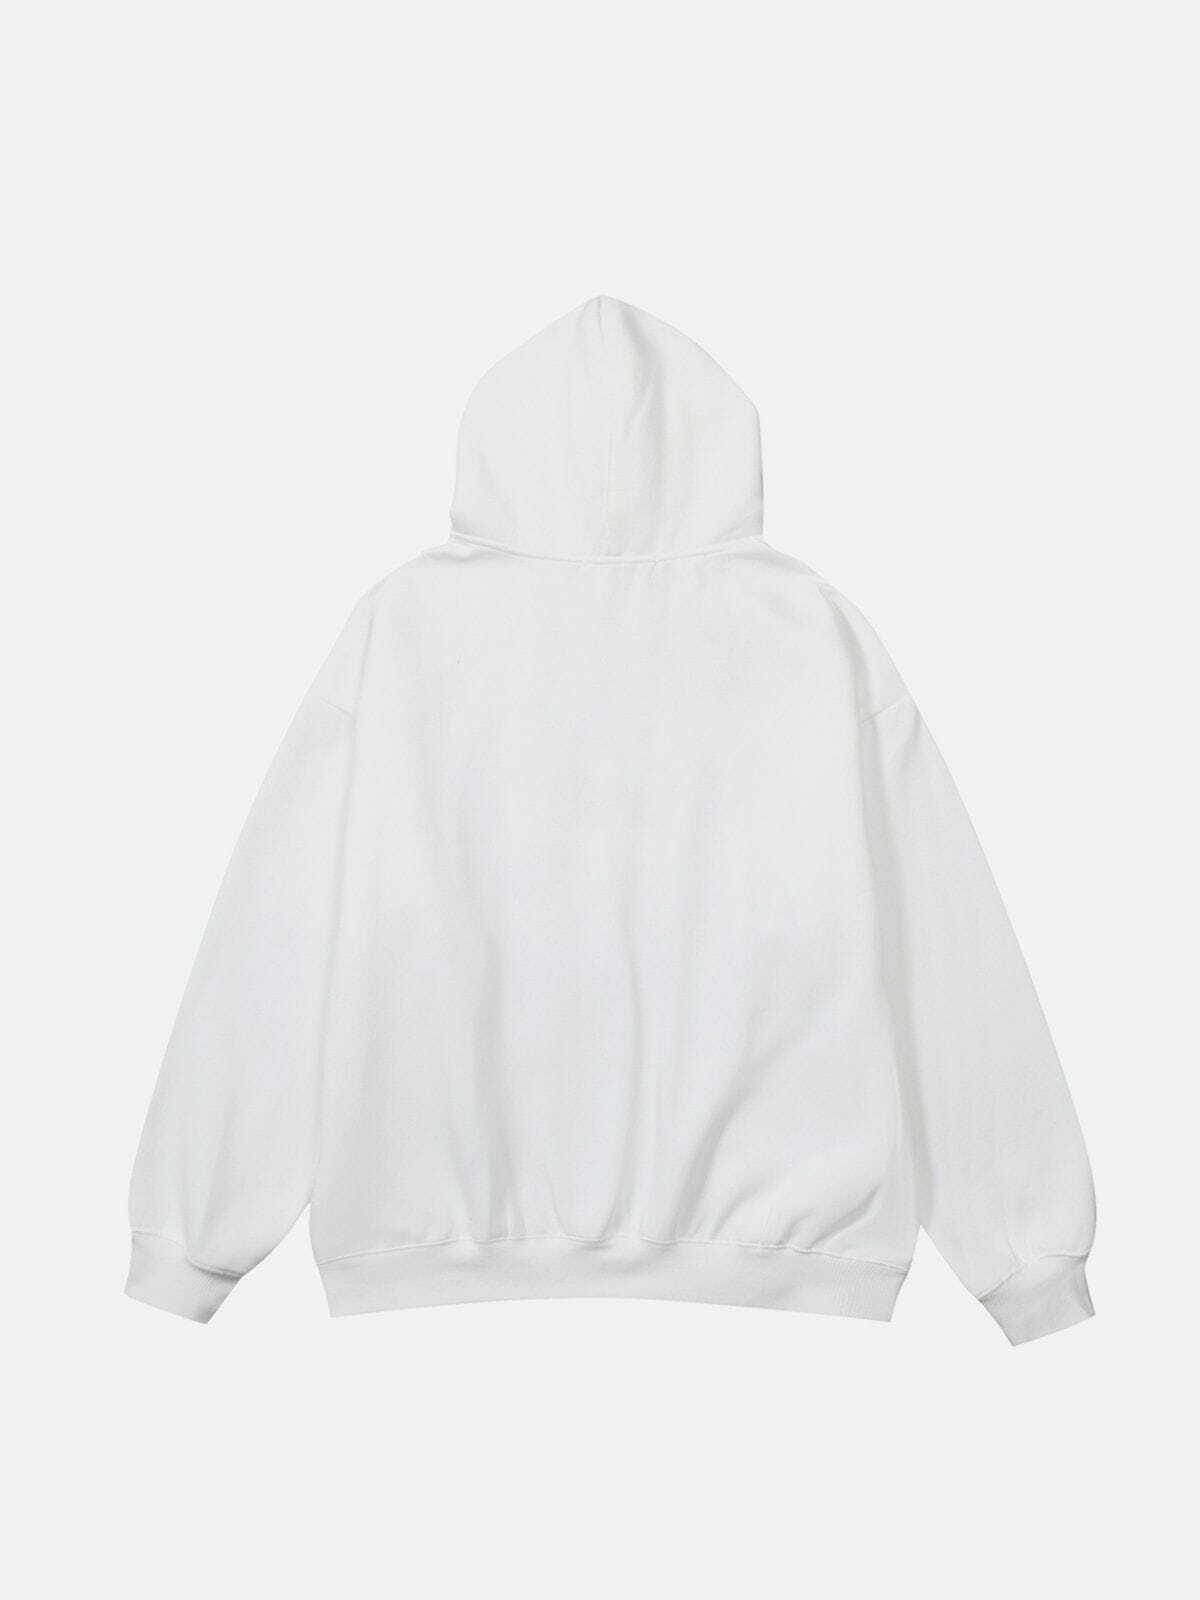 cosmic print hoodie retro y2k streetwear essential 8197